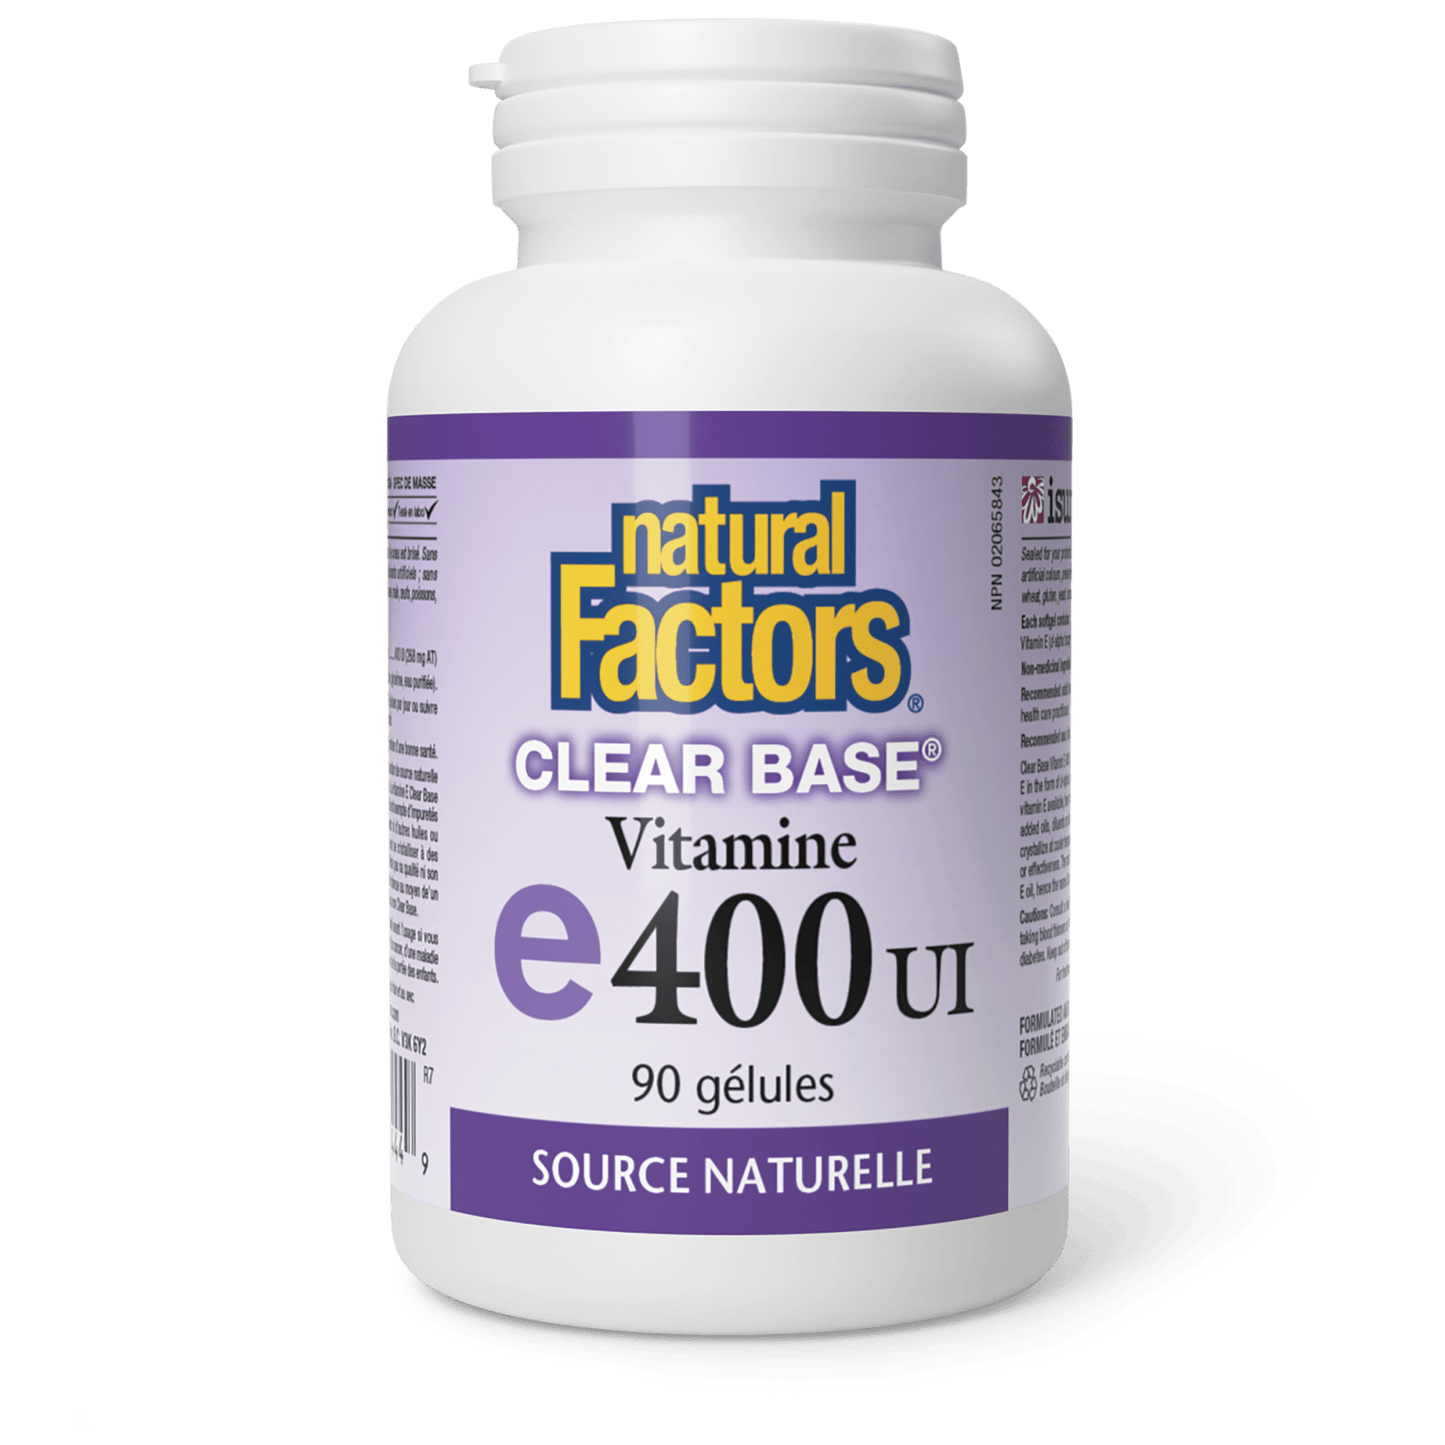 Vitamine E Clear BaseMD 400 UI, source naturelle, Natural Factors|v|image|1444